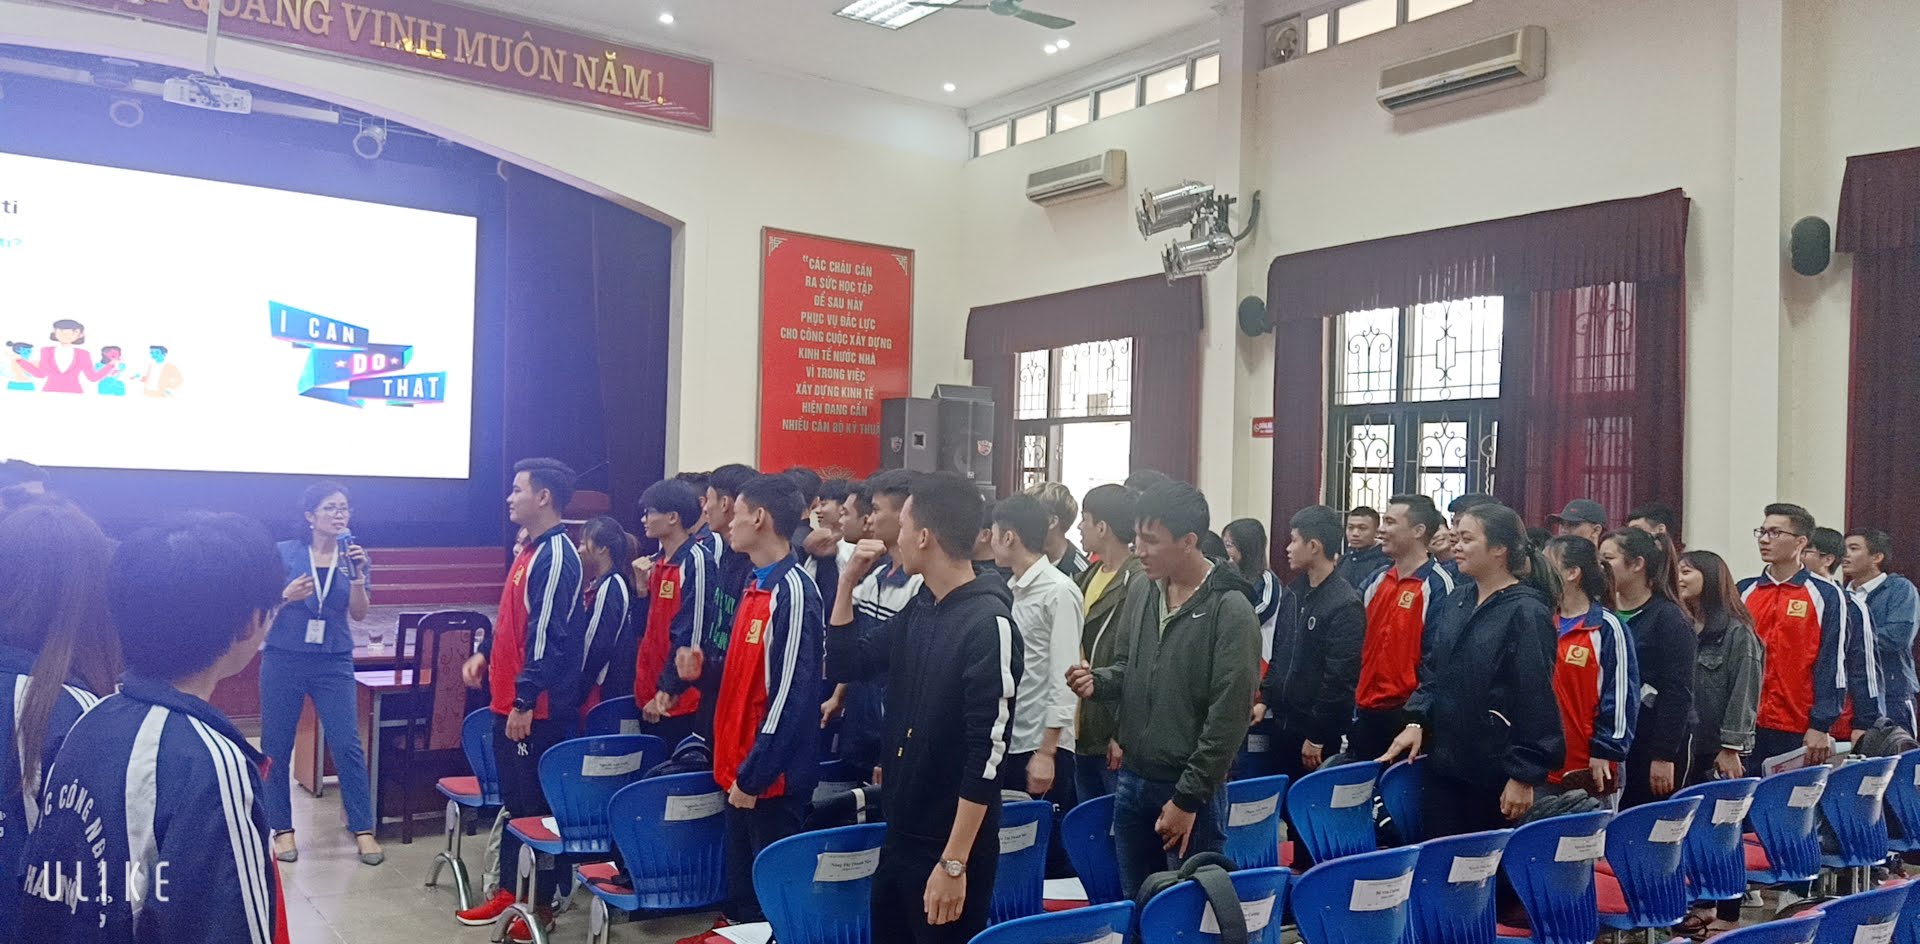 24 cán bộ lớp hệ cao đẳng K21 của Trung tâm Việt Nhật tham gia khóa học tập huấn kỹ năng mềm trong thời đại công nghệ 4.0